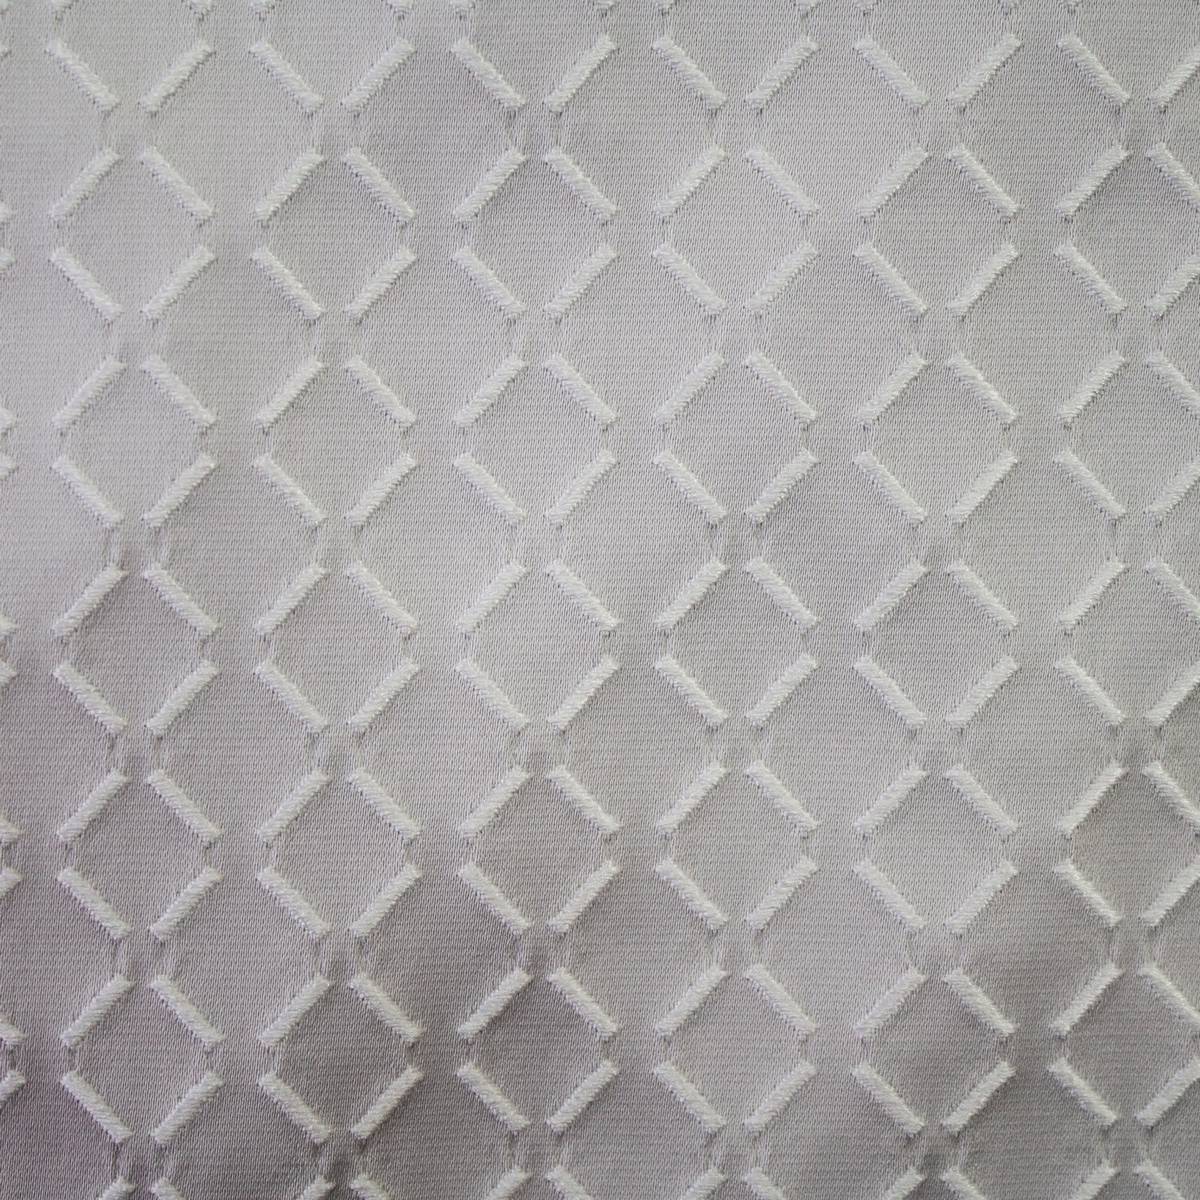 Burman Platinum Fabric by Ashley Wilde